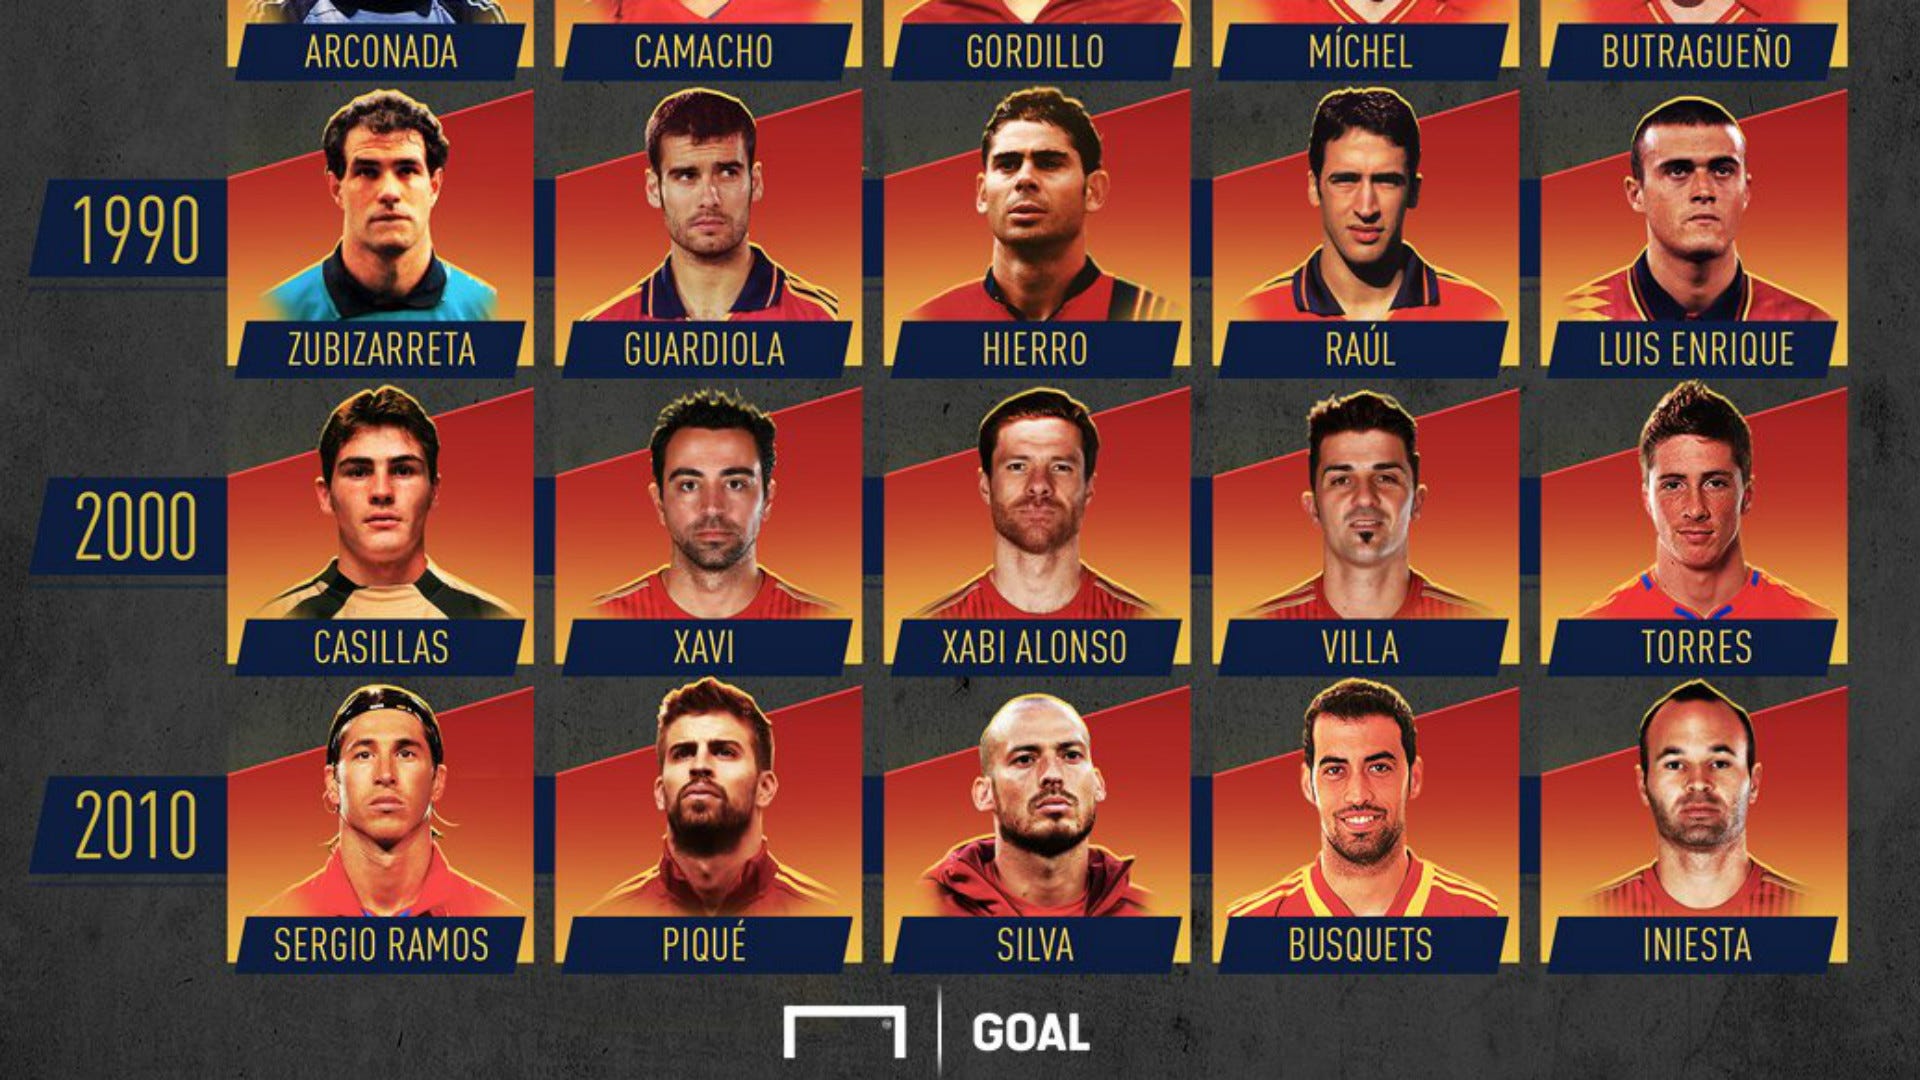 Los jugadores de la historia la Selección | Goal.com Espana